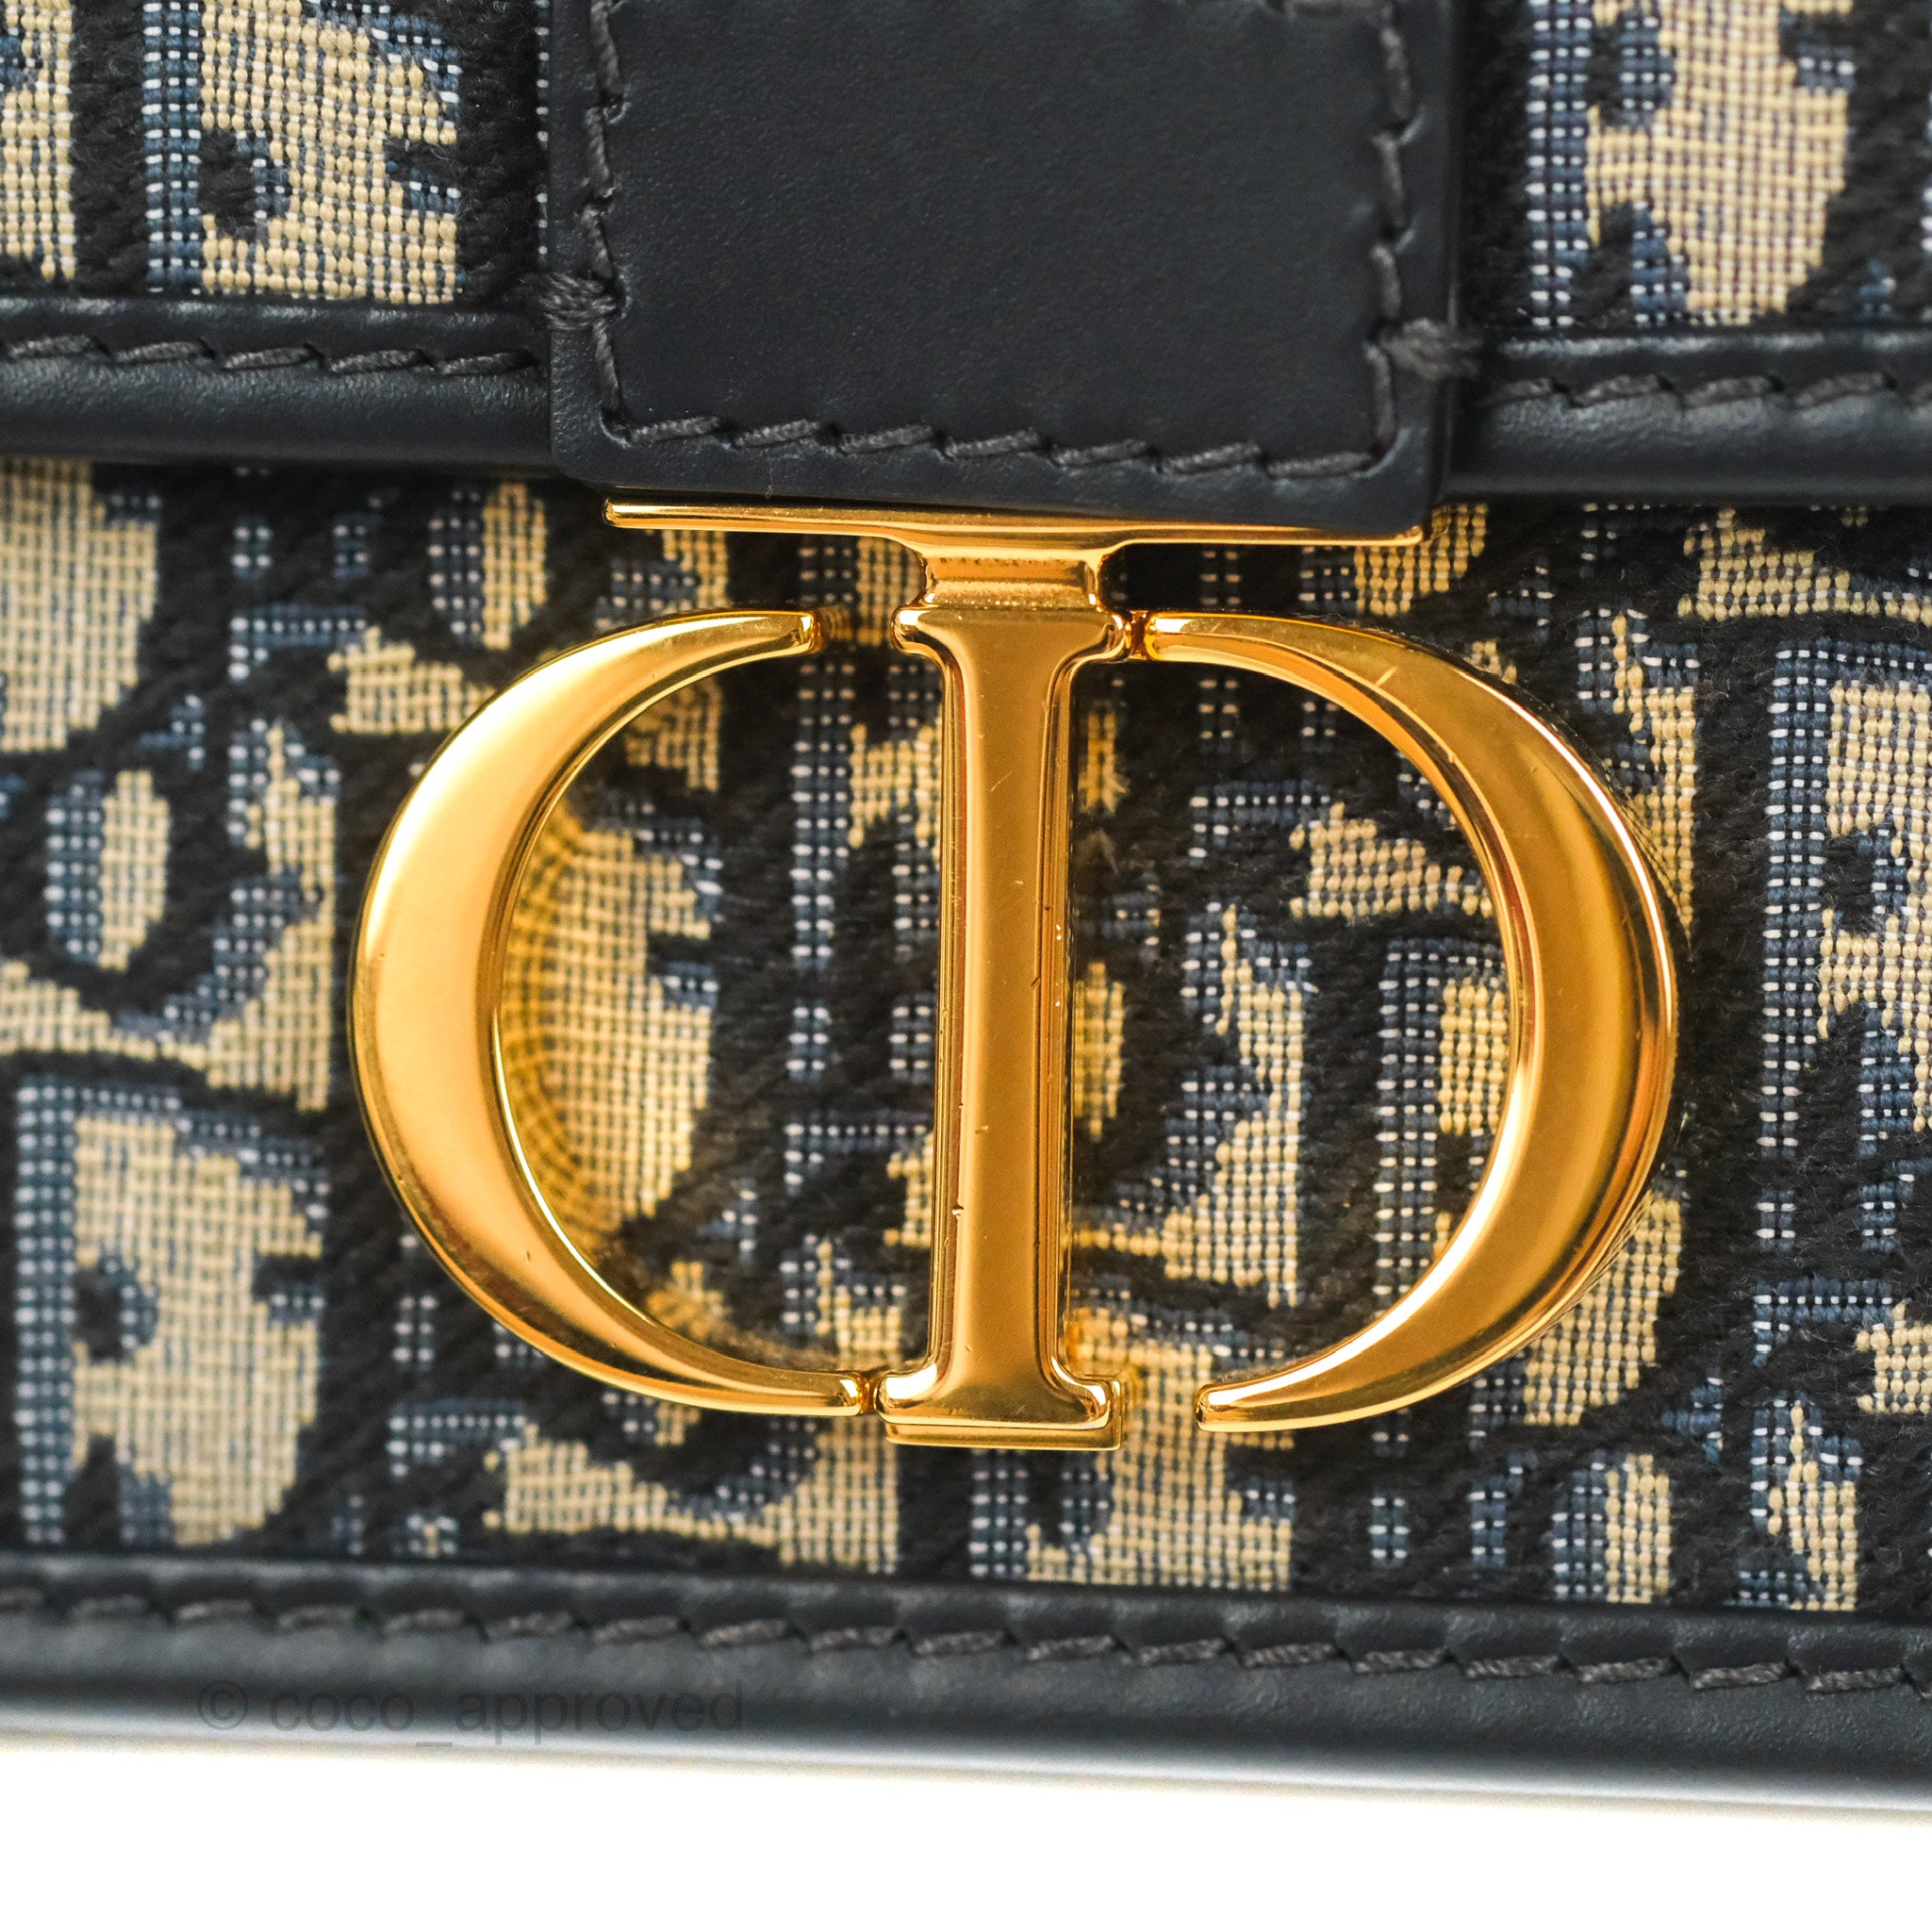 30 Montaigne Bag Blue Dior Oblique Jacquard